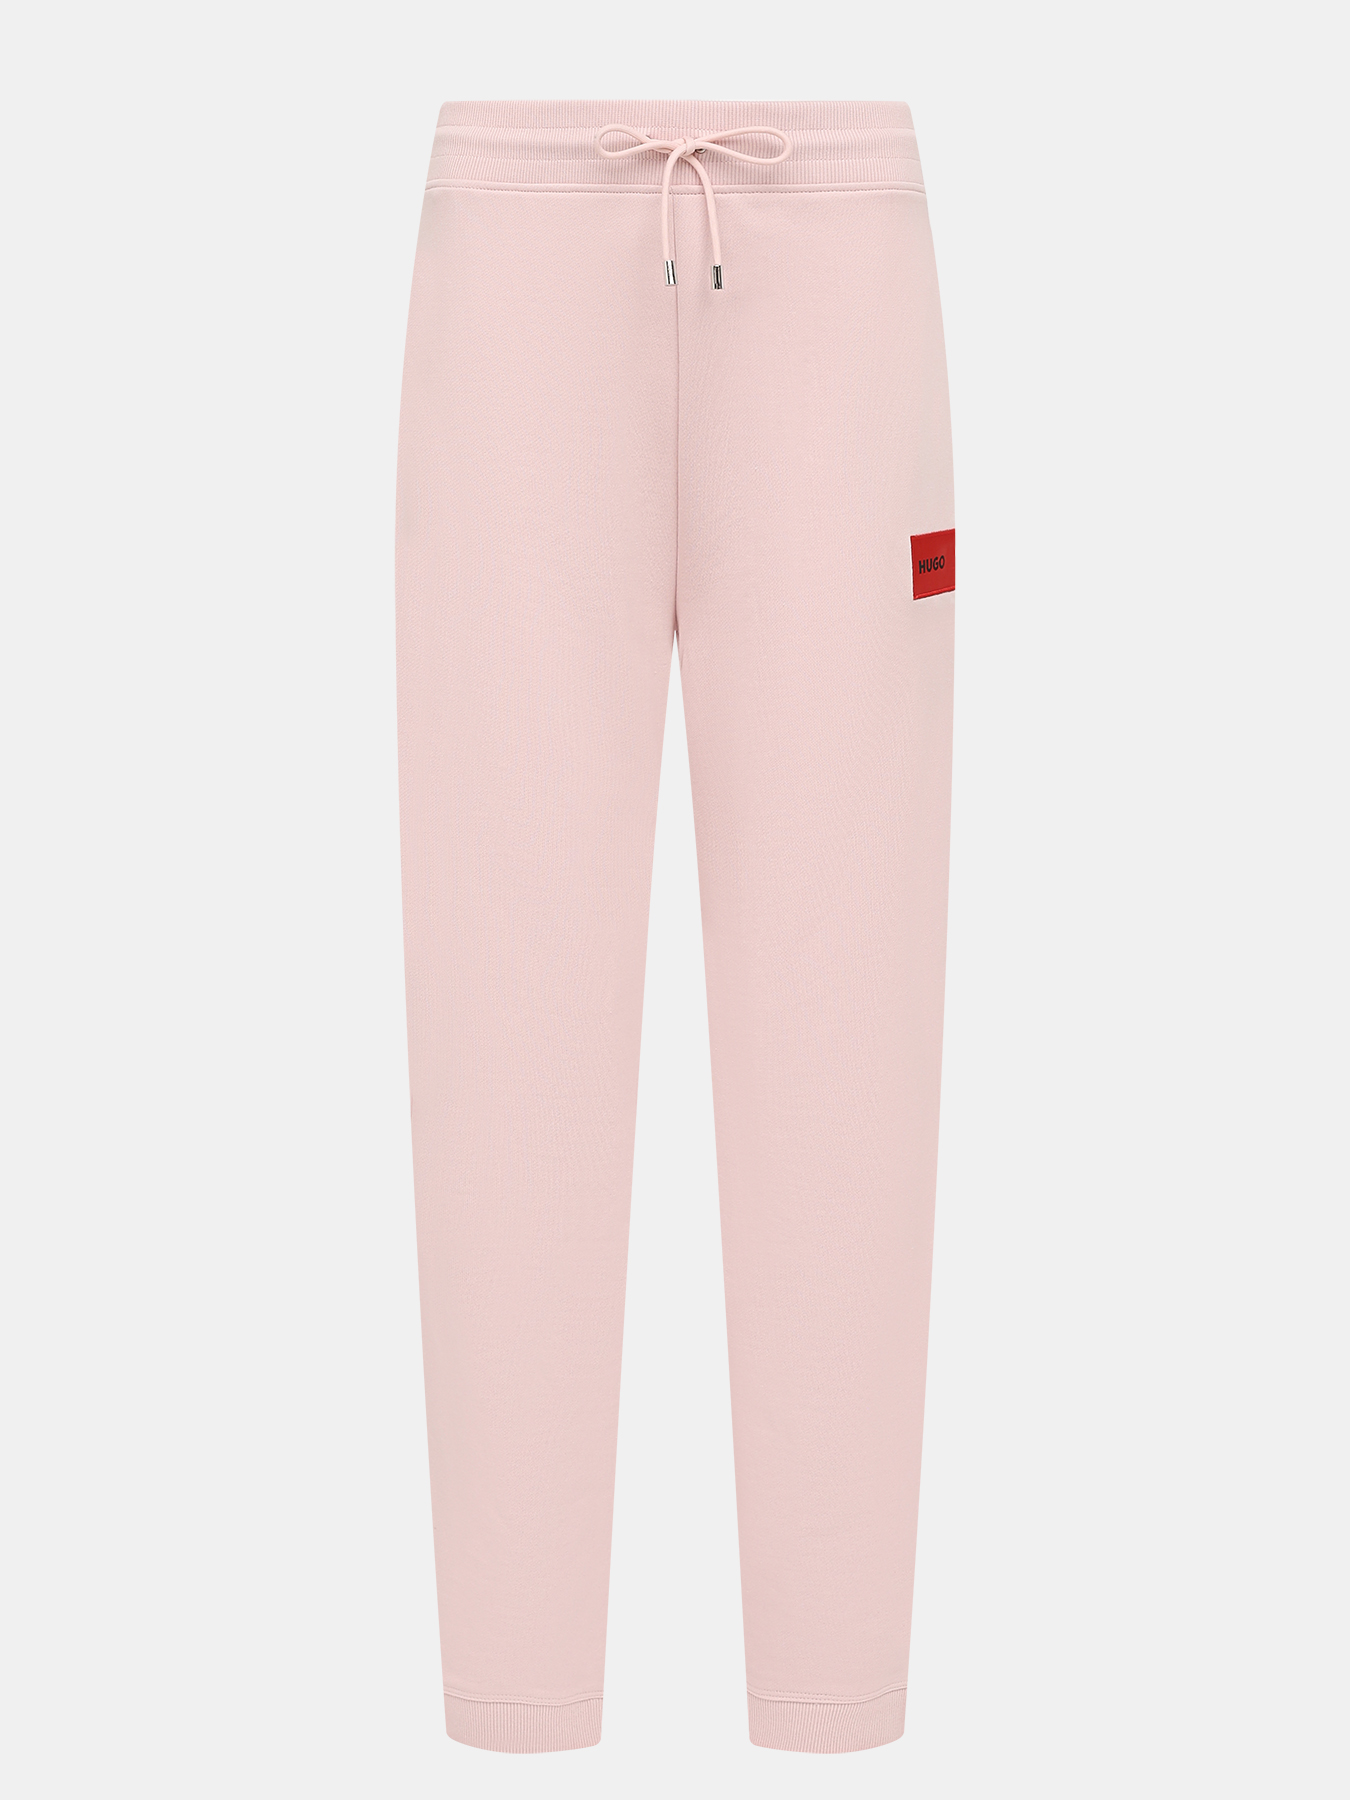 Спортивные брюки Dachibi redlabel HUGO 420594-042, цвет розовый, размер 42-44 - фото 1